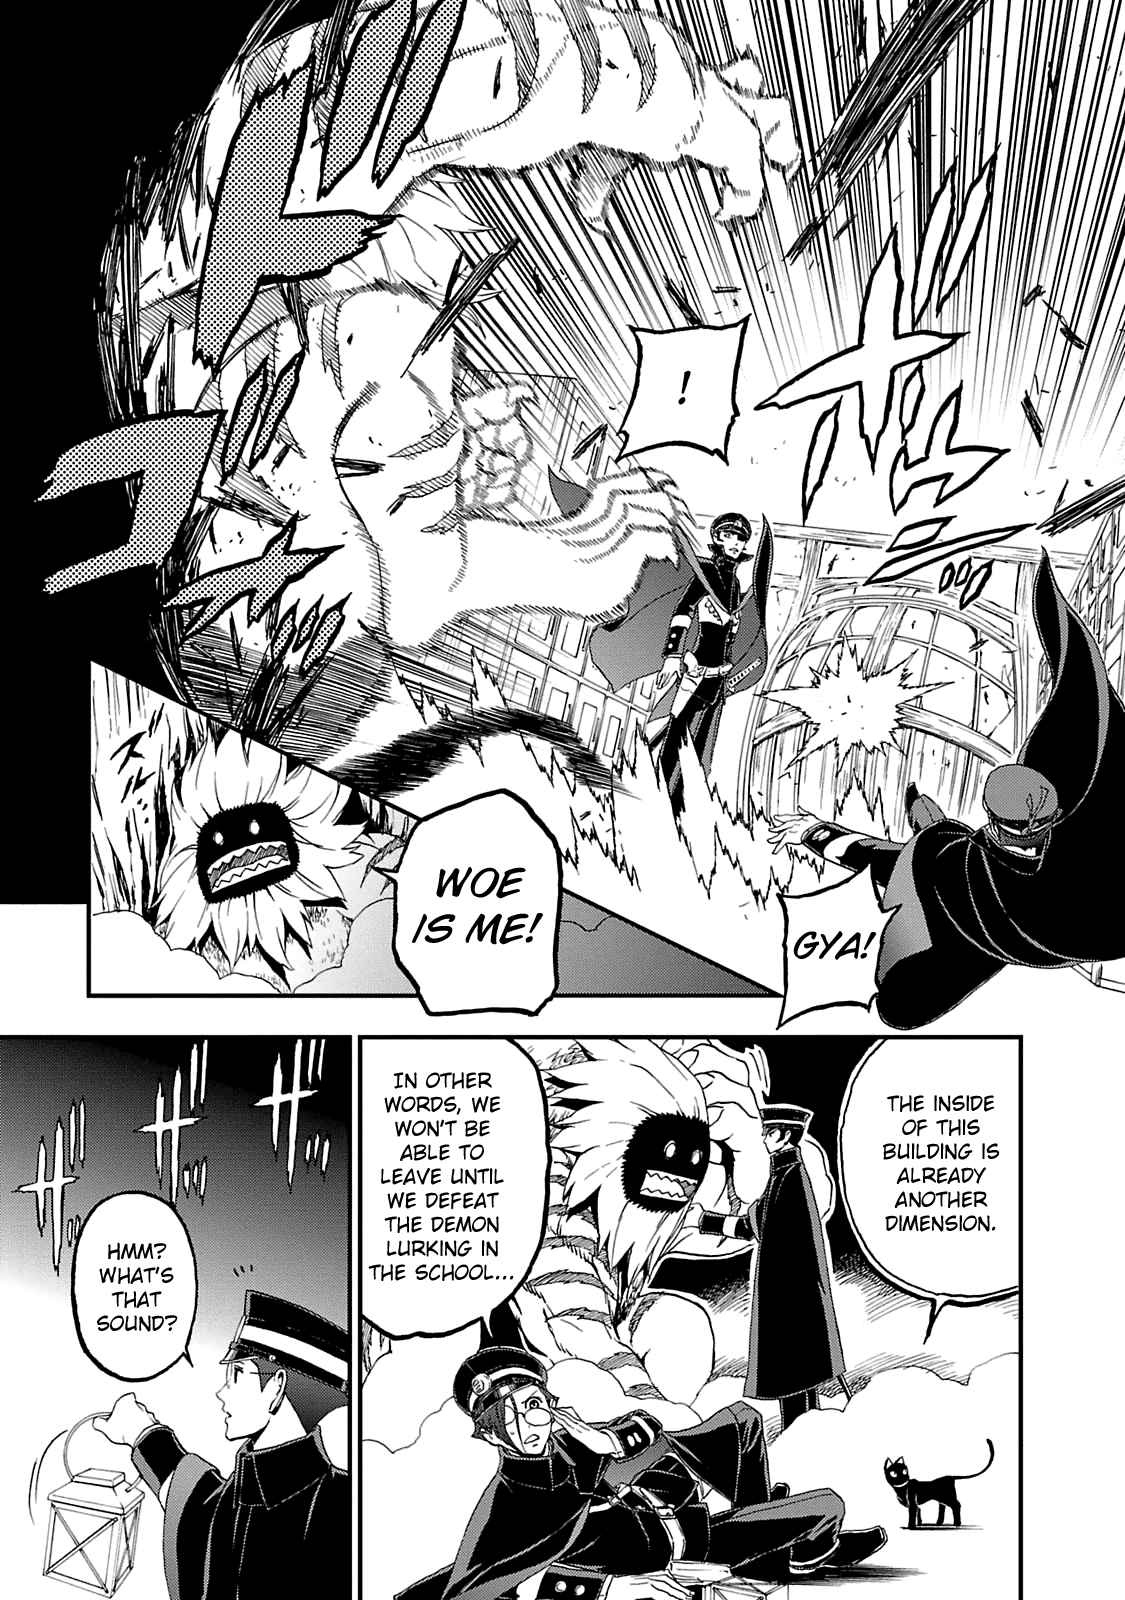 Shin Megami Tensei: Devil Summoner Kuzunoha Raidou Tai Kodokuno Marebito Vol. 2 Ch. 11 For Whom?